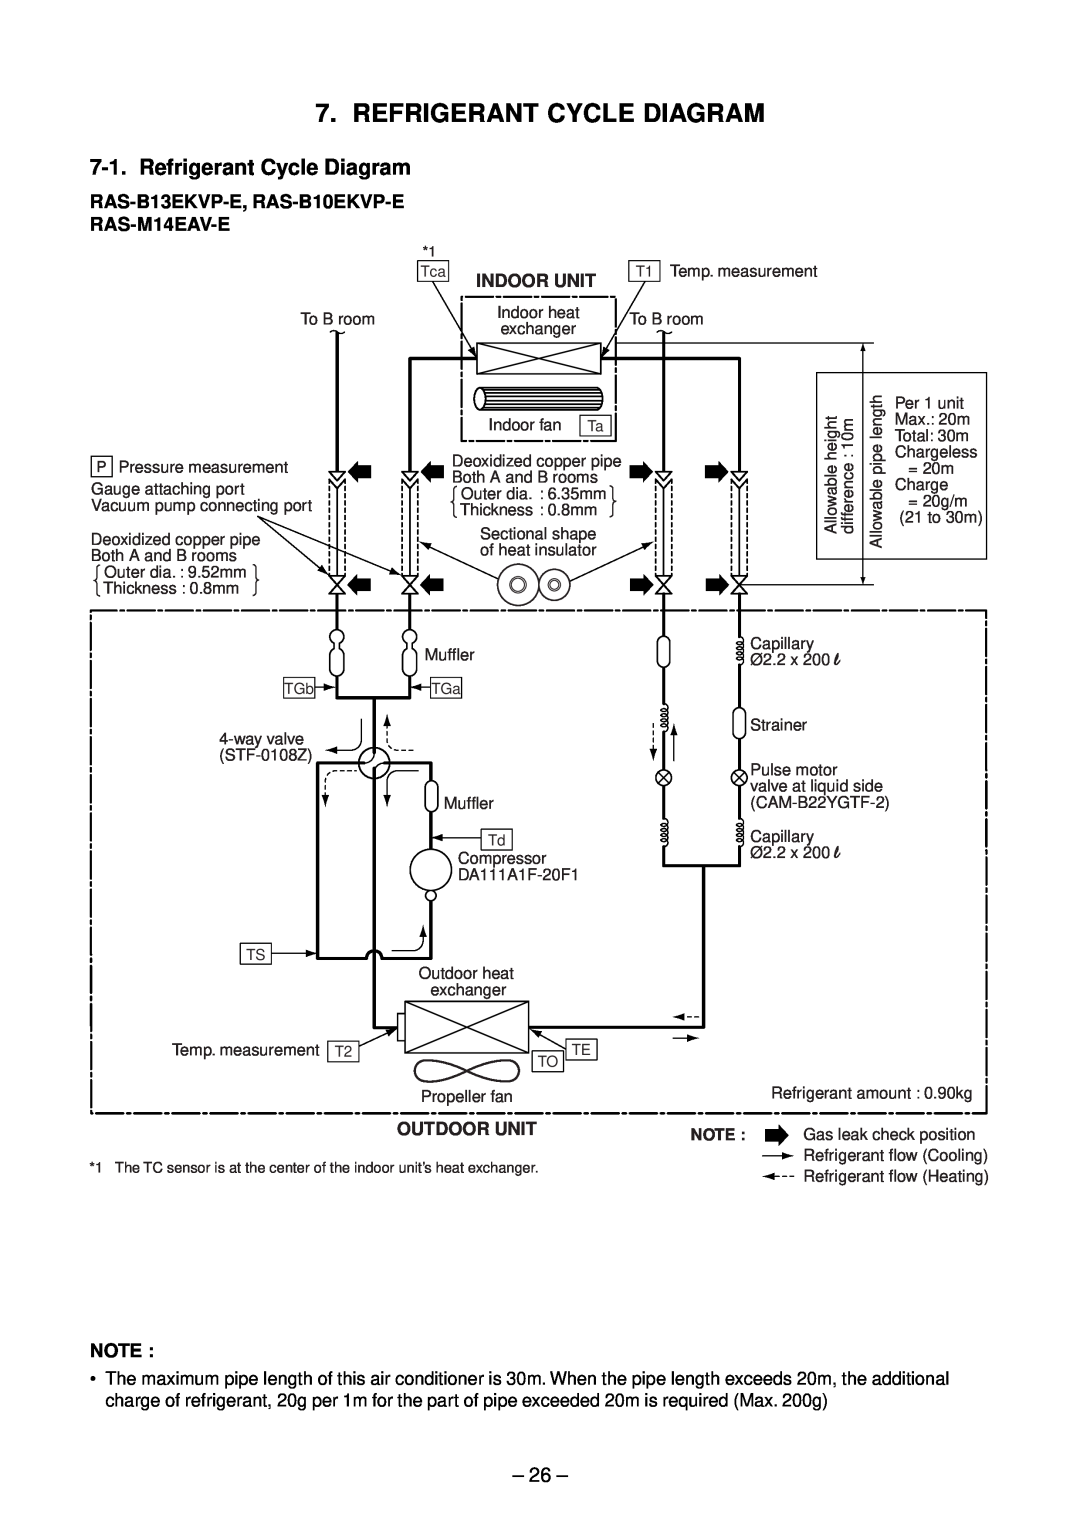 Toshiba RAS-M13EKCVP-E, RAS-M18EACV-E Refrigerant Cycle Diagram, 26, RAS-B13EKVP-E, RAS-B10EKVP-E RAS-M14EAV-E 